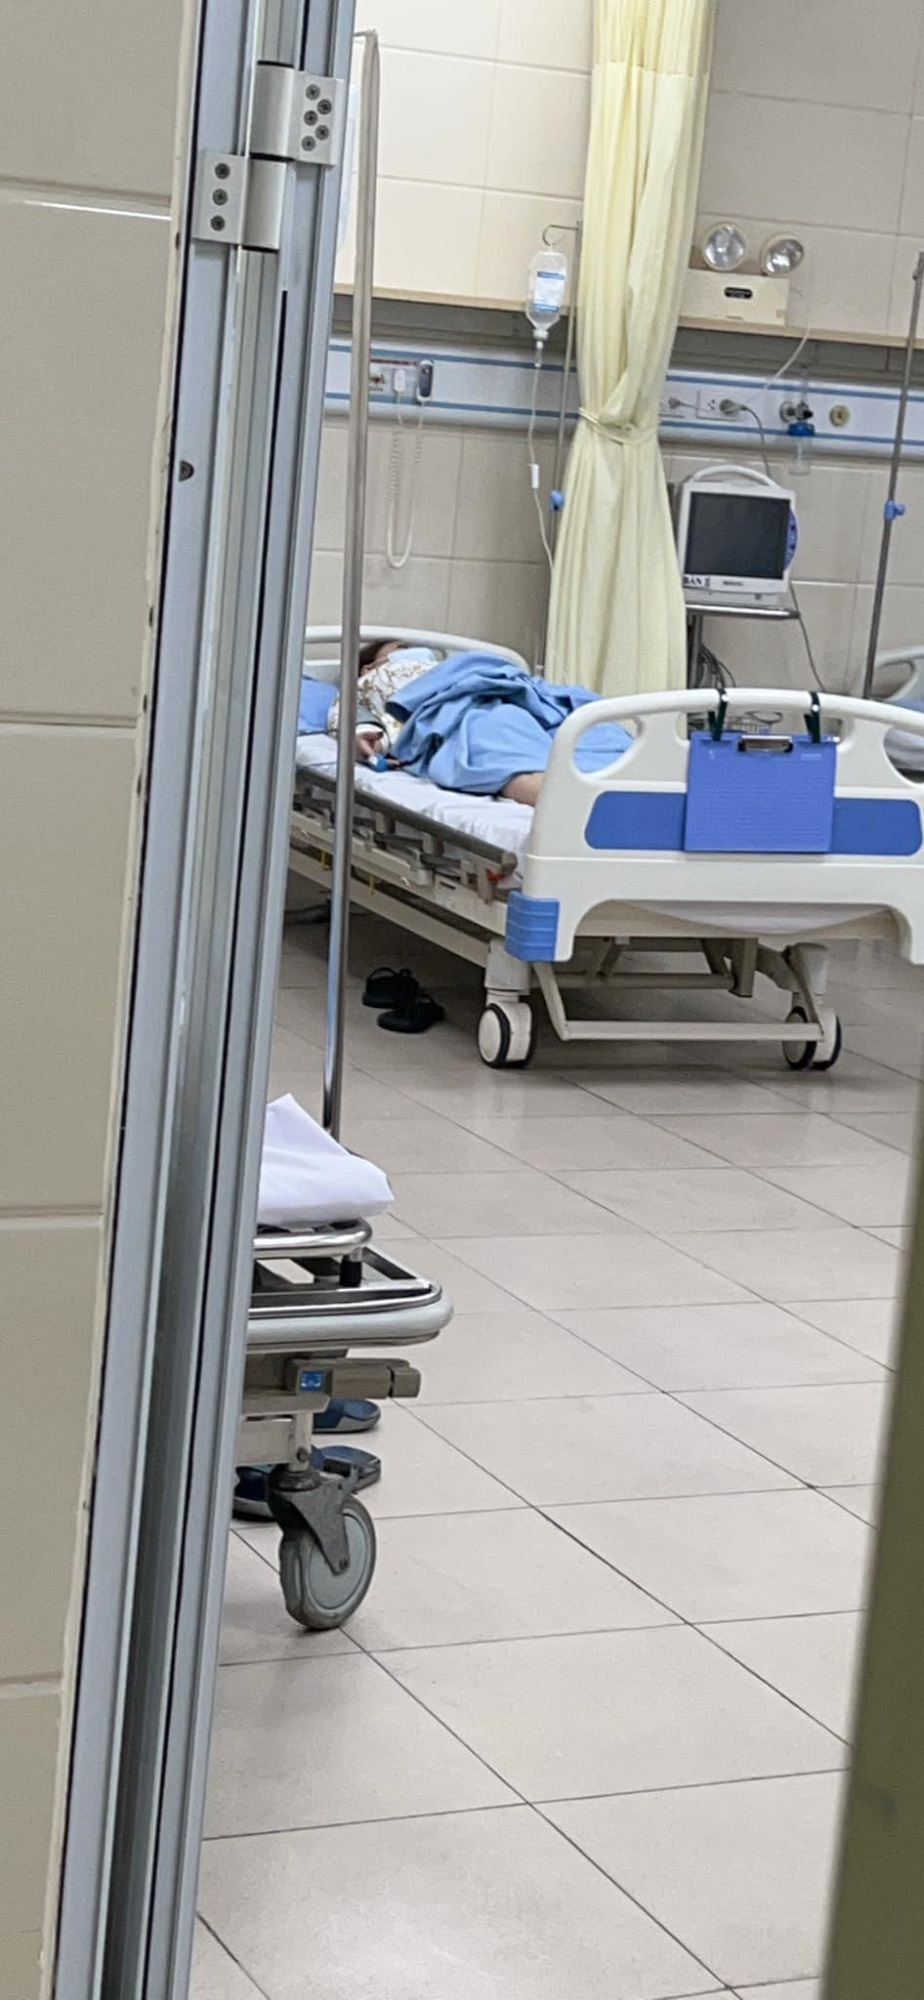 Lê Giang đột ngột nhập viện tại Hà Nội: Ngủ dậy thấy đau, người yếu, may mắn được đàn em đưa cấp cứu kịp thời - Ảnh 3